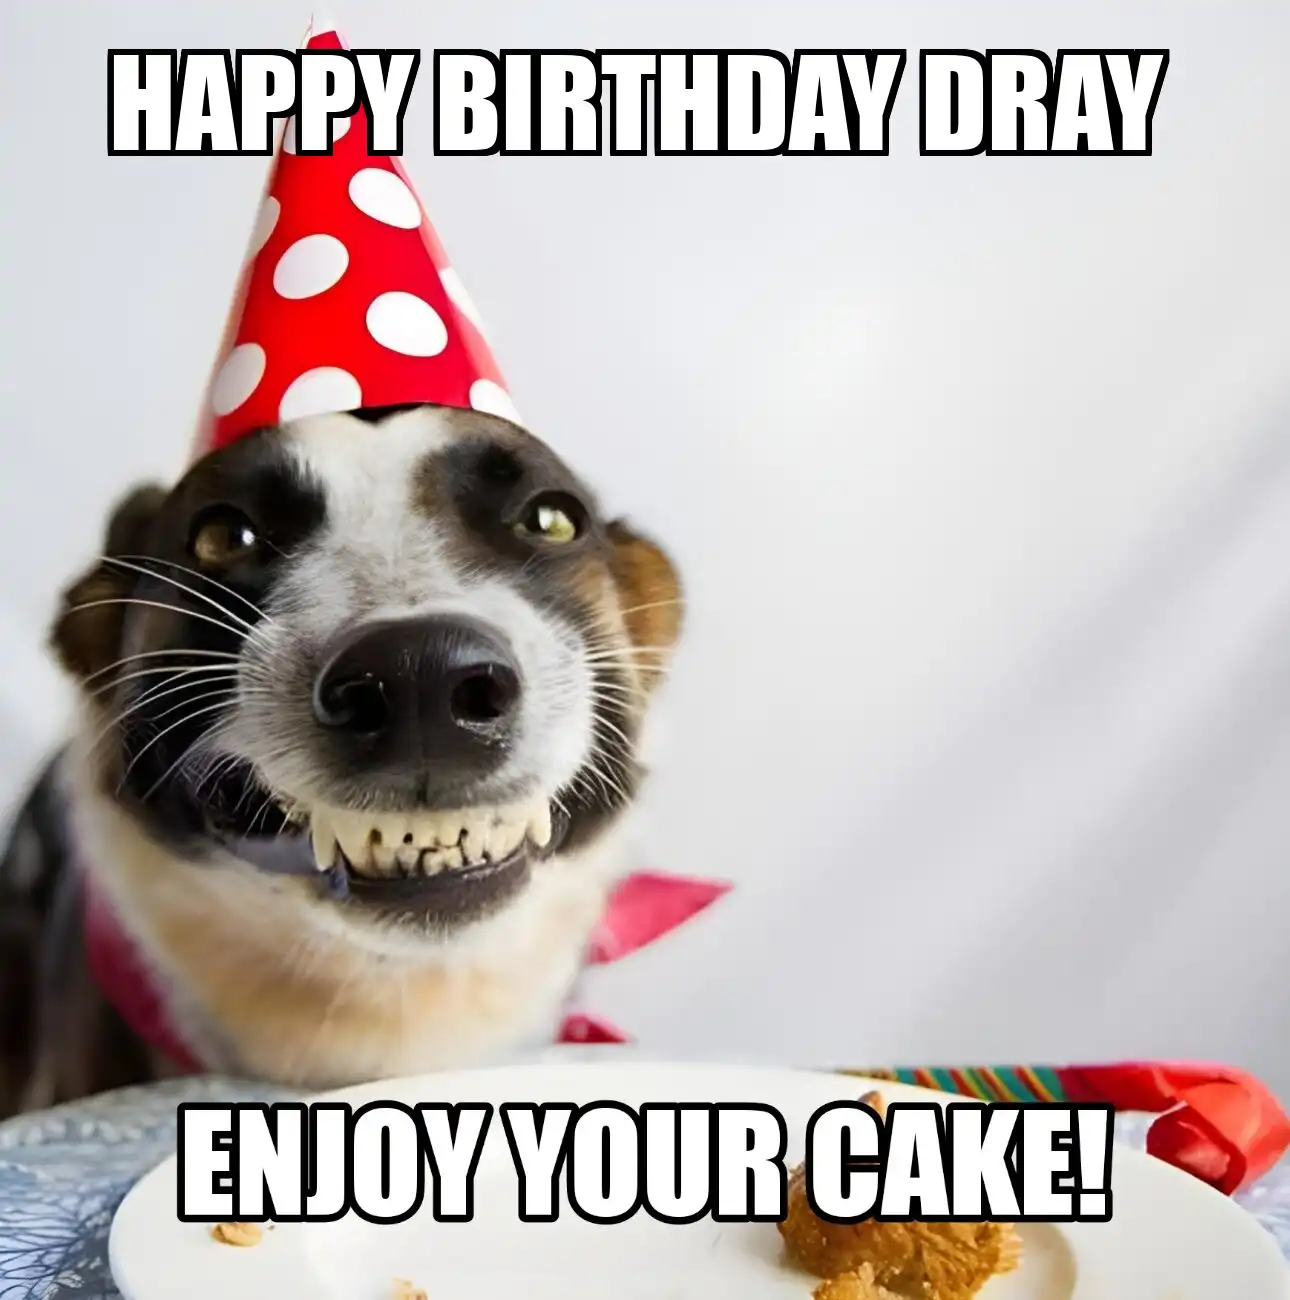 Happy Birthday Dray Enjoy Your Cake Dog Meme